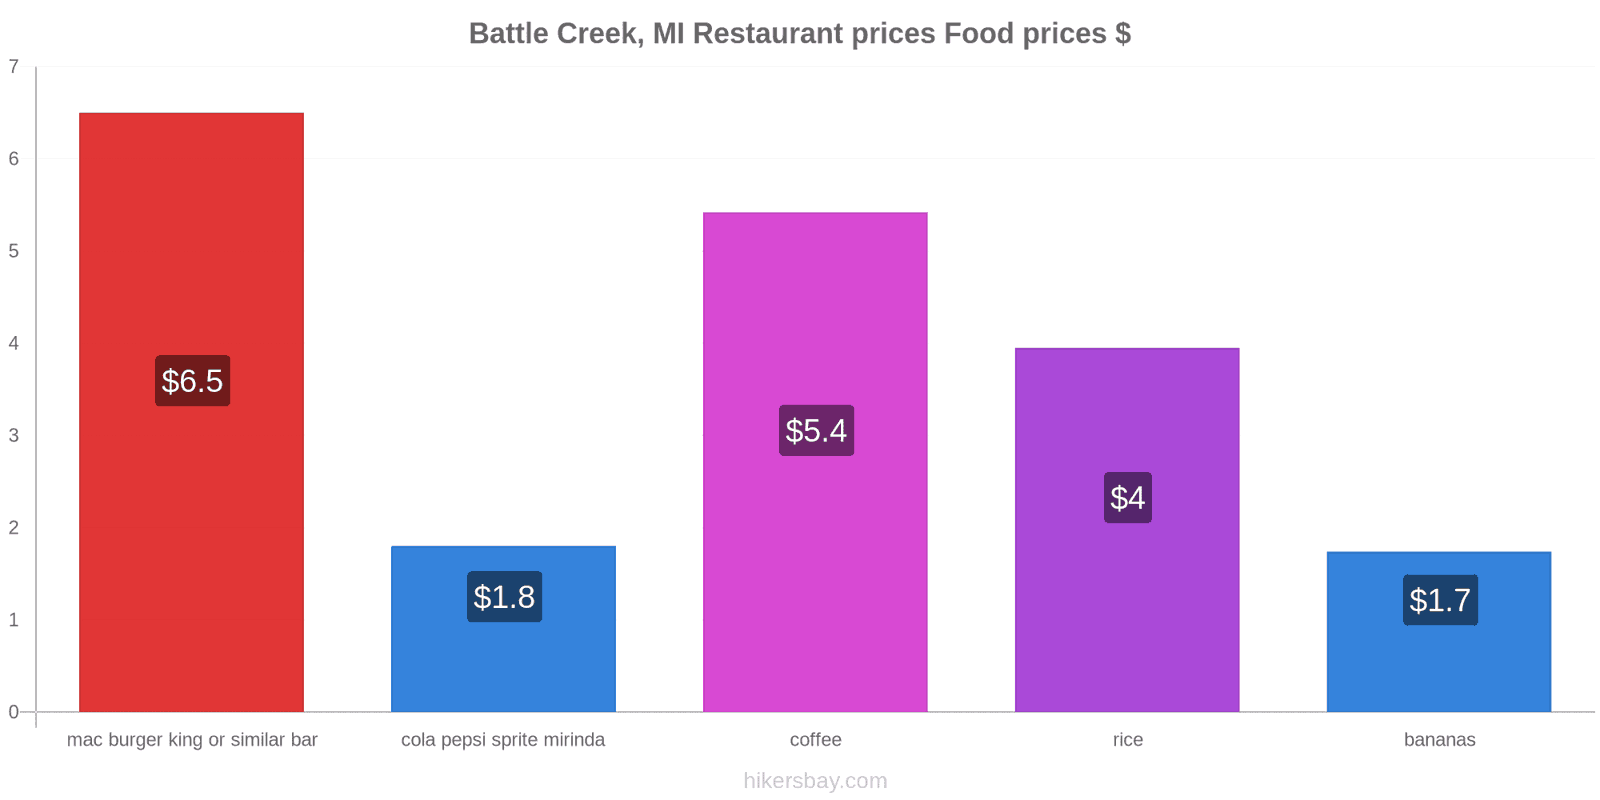 Battle Creek, MI price changes hikersbay.com